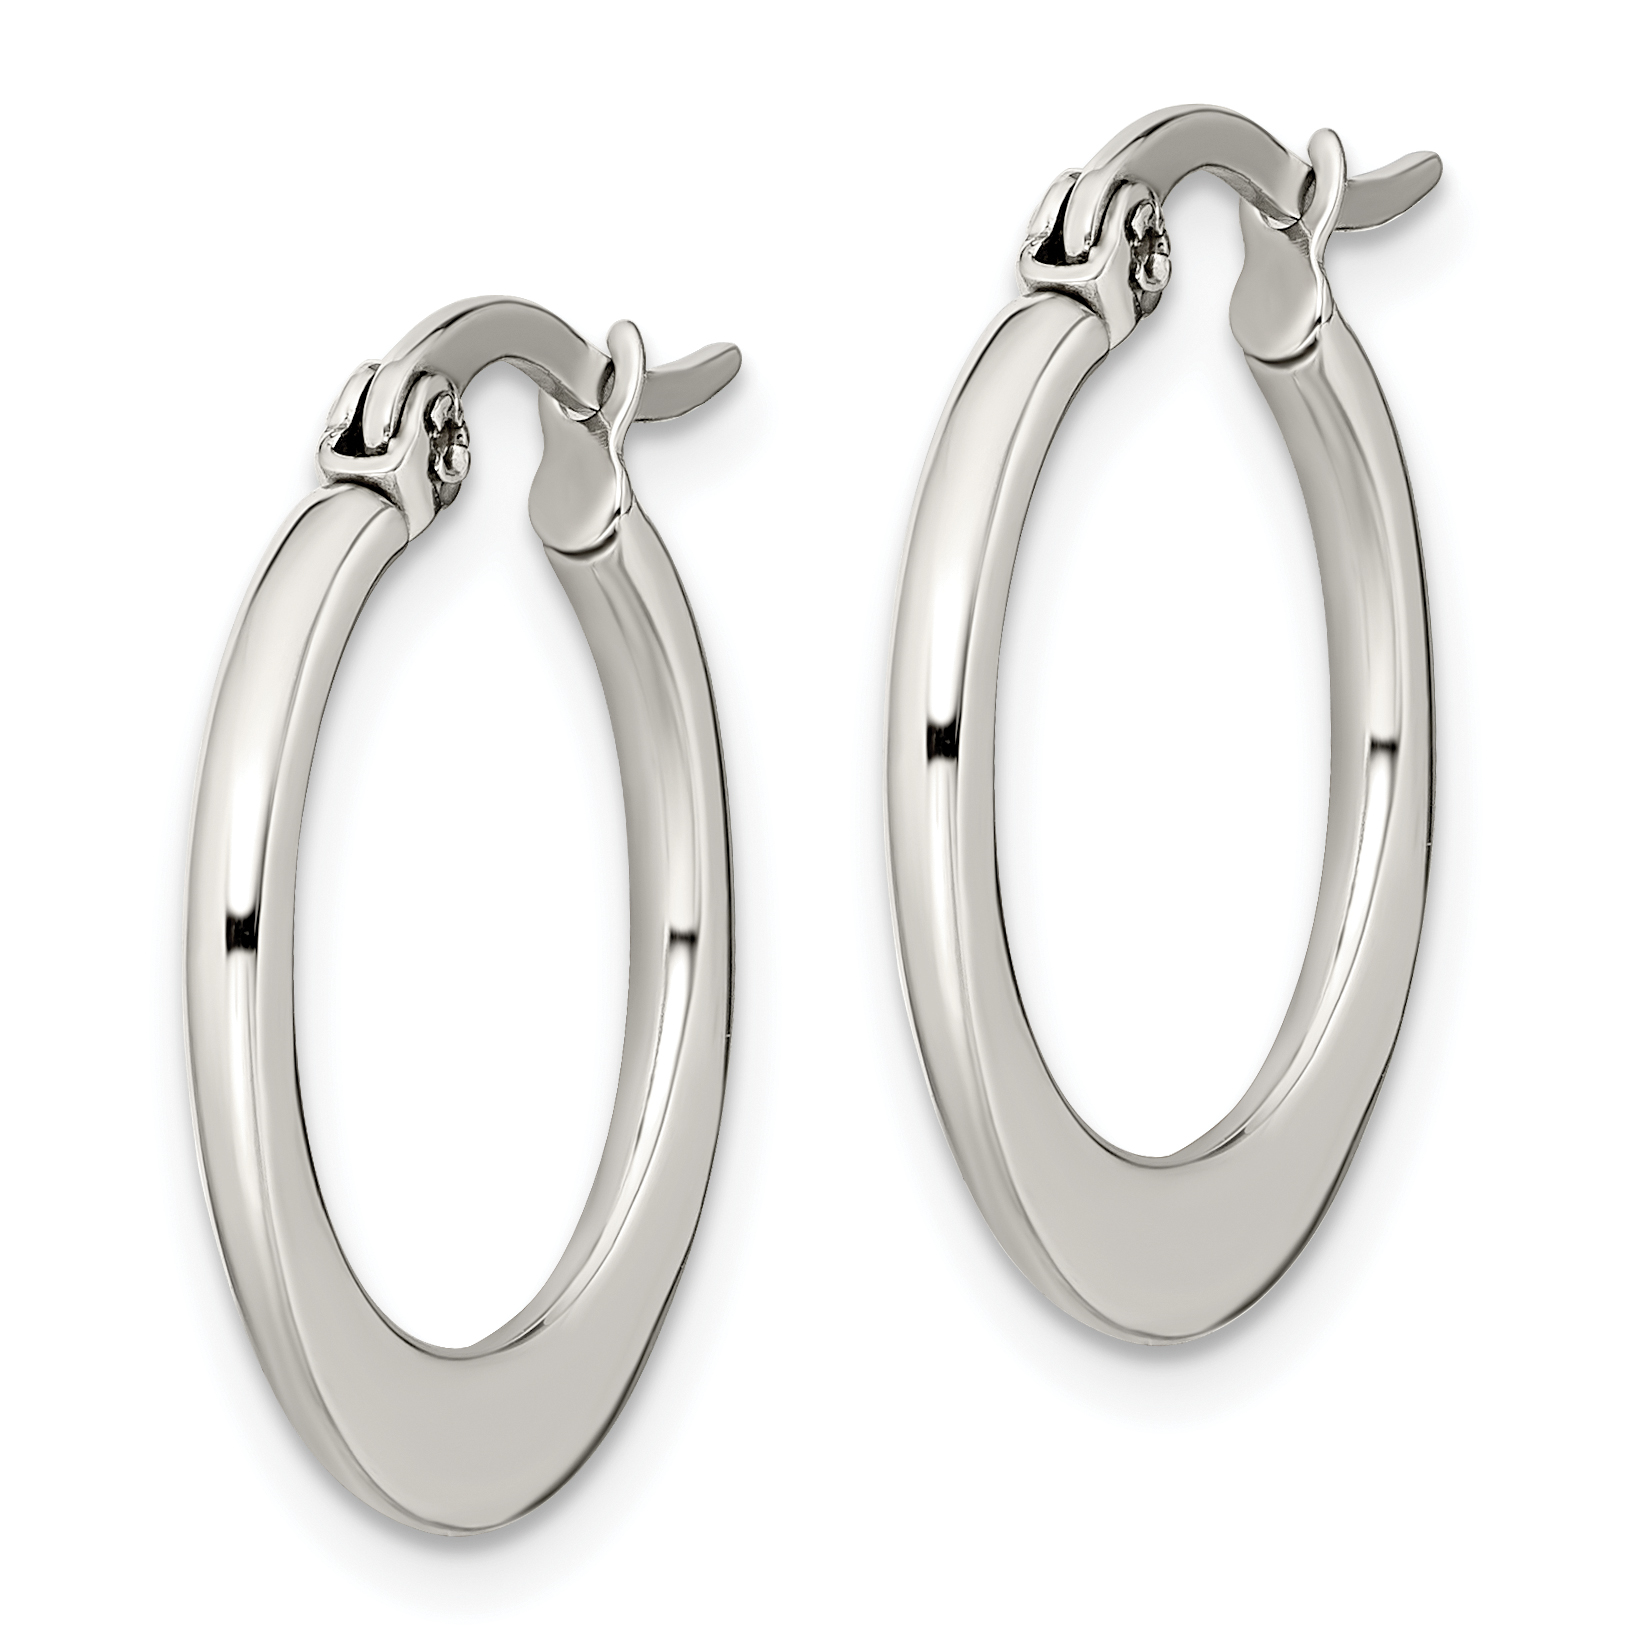 Stainless Steel 19mm Diameter Hoop Earrings Ear Hoops Set Fashion ...